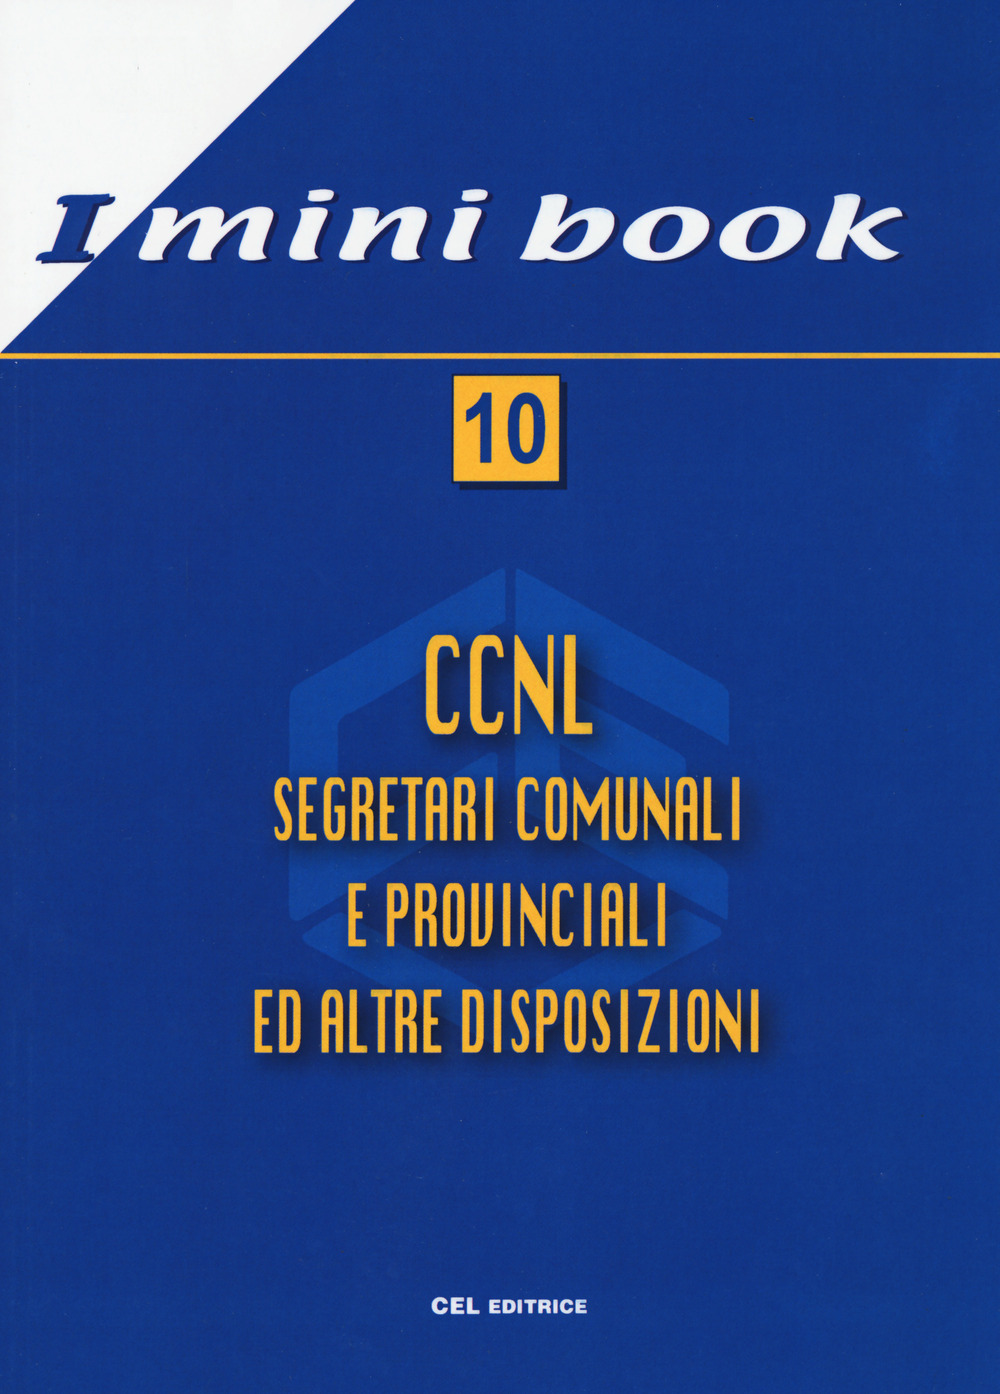 Image of CCNL. Segretari comunali ed altre disposizioni